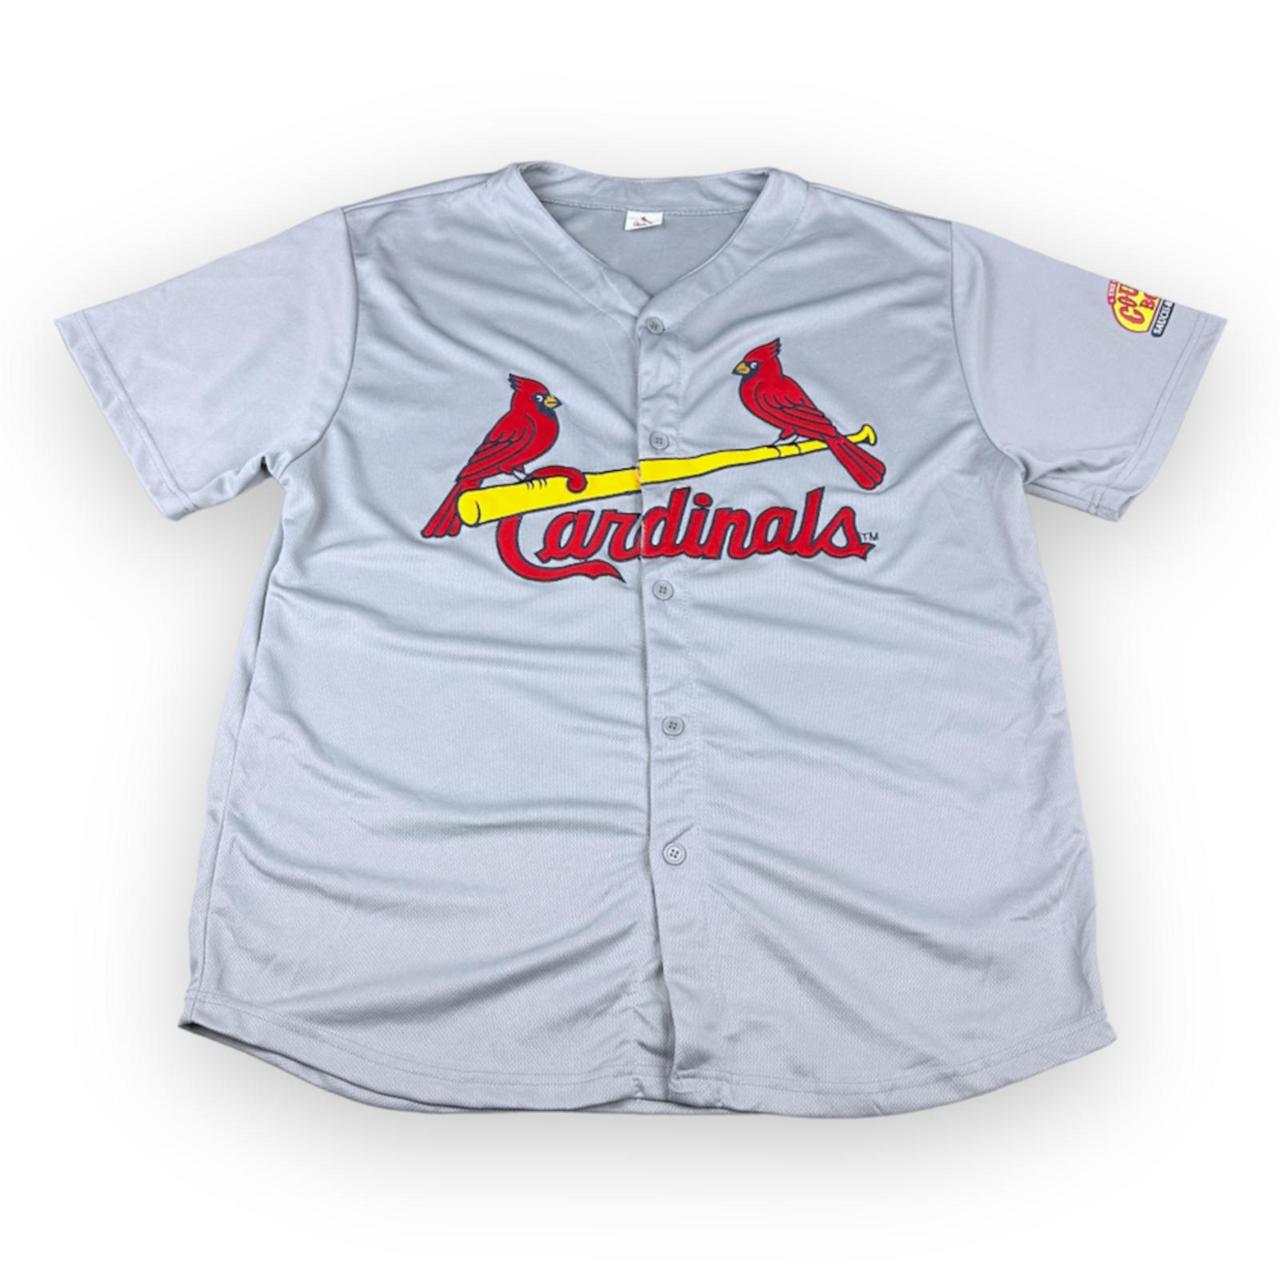 St. Louis Cardinals T-Shirt Men's Size XL Short - Depop